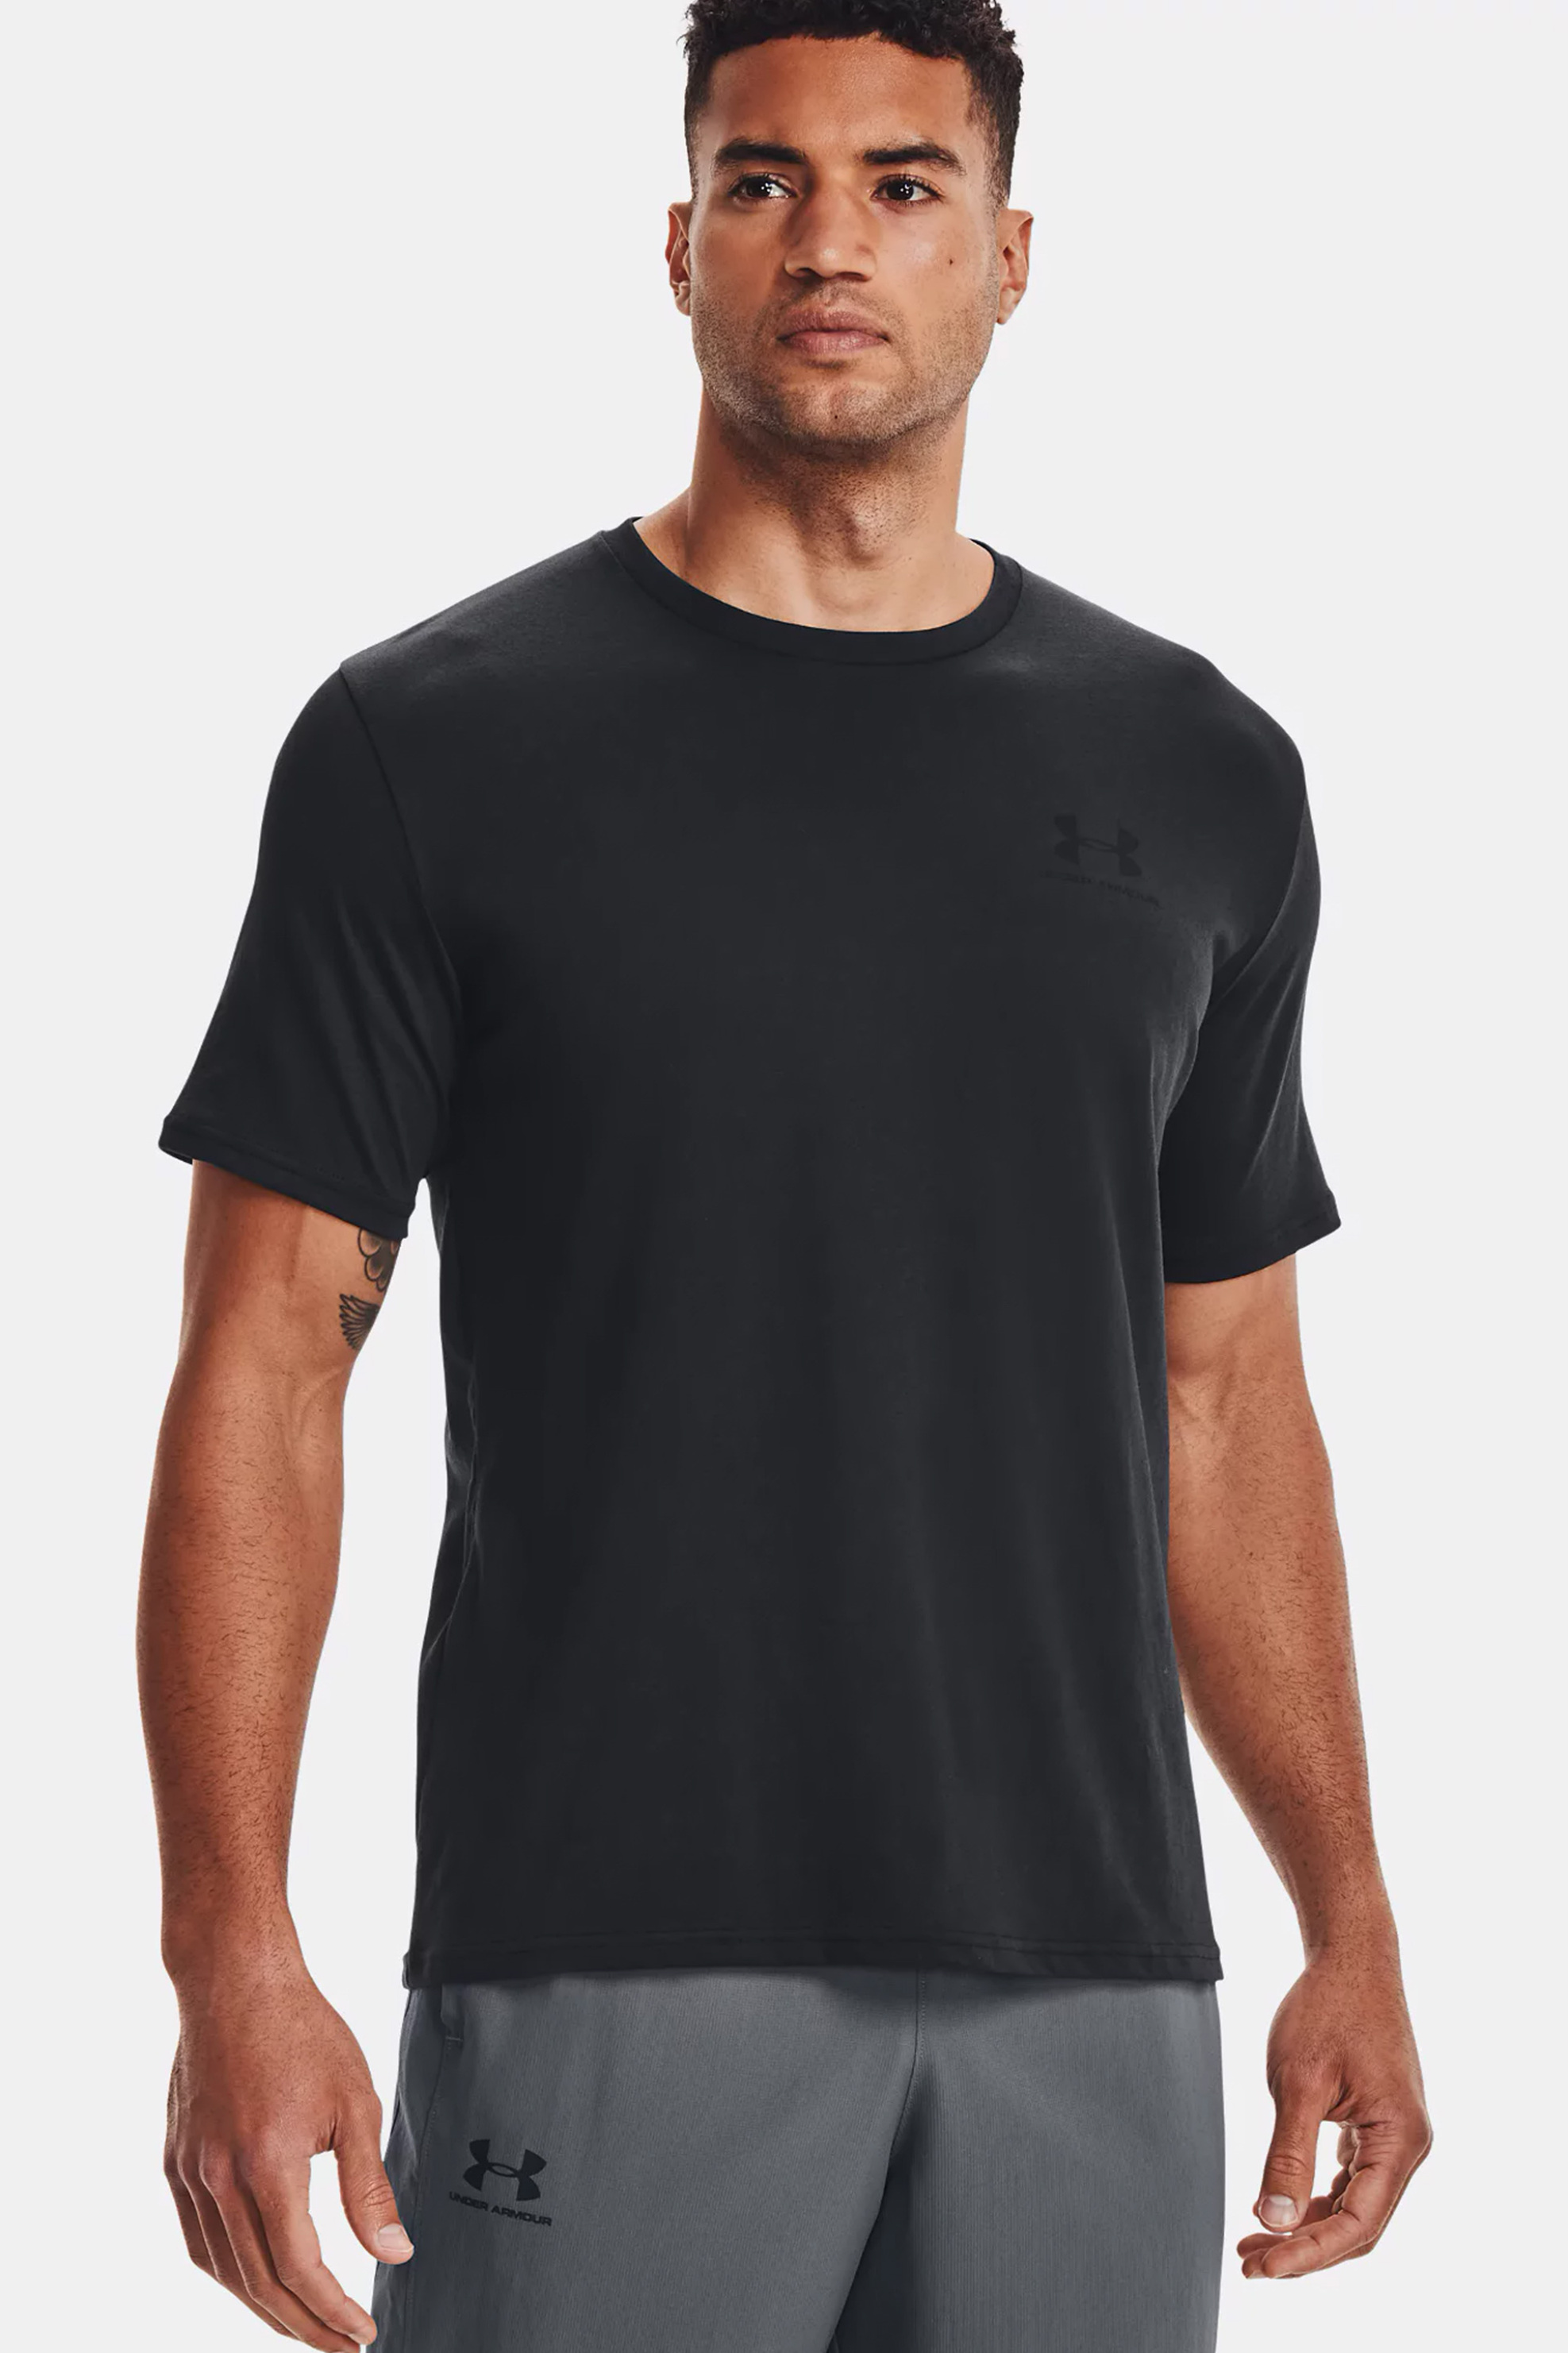 Άνδρας > ΡΟΥΧΑ > Μπλούζες > T-Shirts Under Armour ανδρικό T-shirt με logo print "UA Sportstyle" - 1326799 Μαύρο